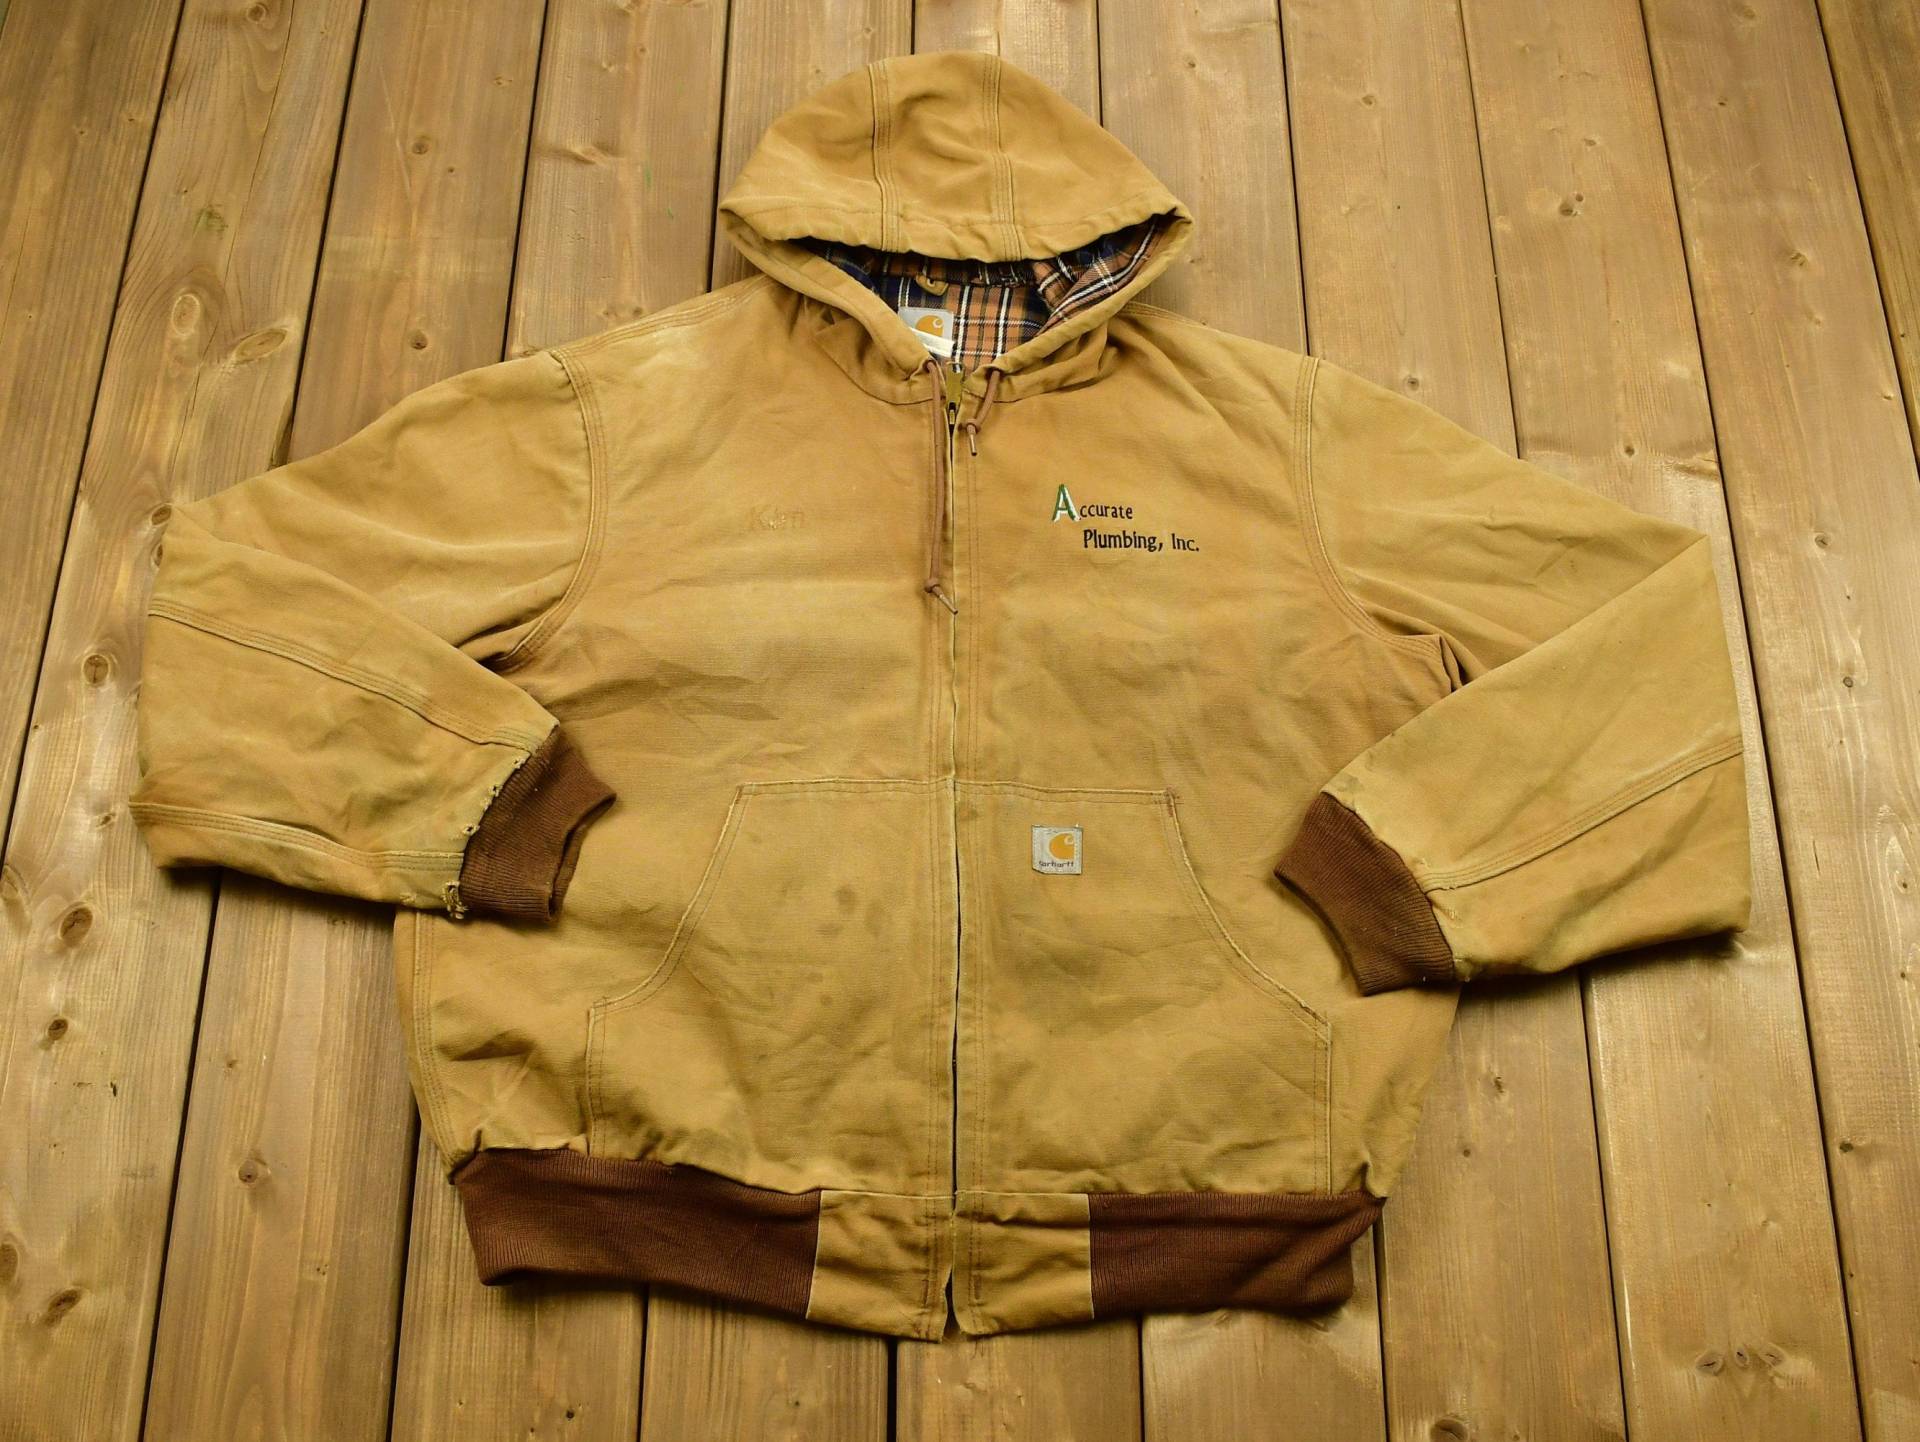 Vintage 1990Er Carhartt Kapuzenarbeitsjacke/Arbeitskleidung Streetwear Made in Usa Decke Gefütterte Jacke Distressed Tan von Lostboysvintage